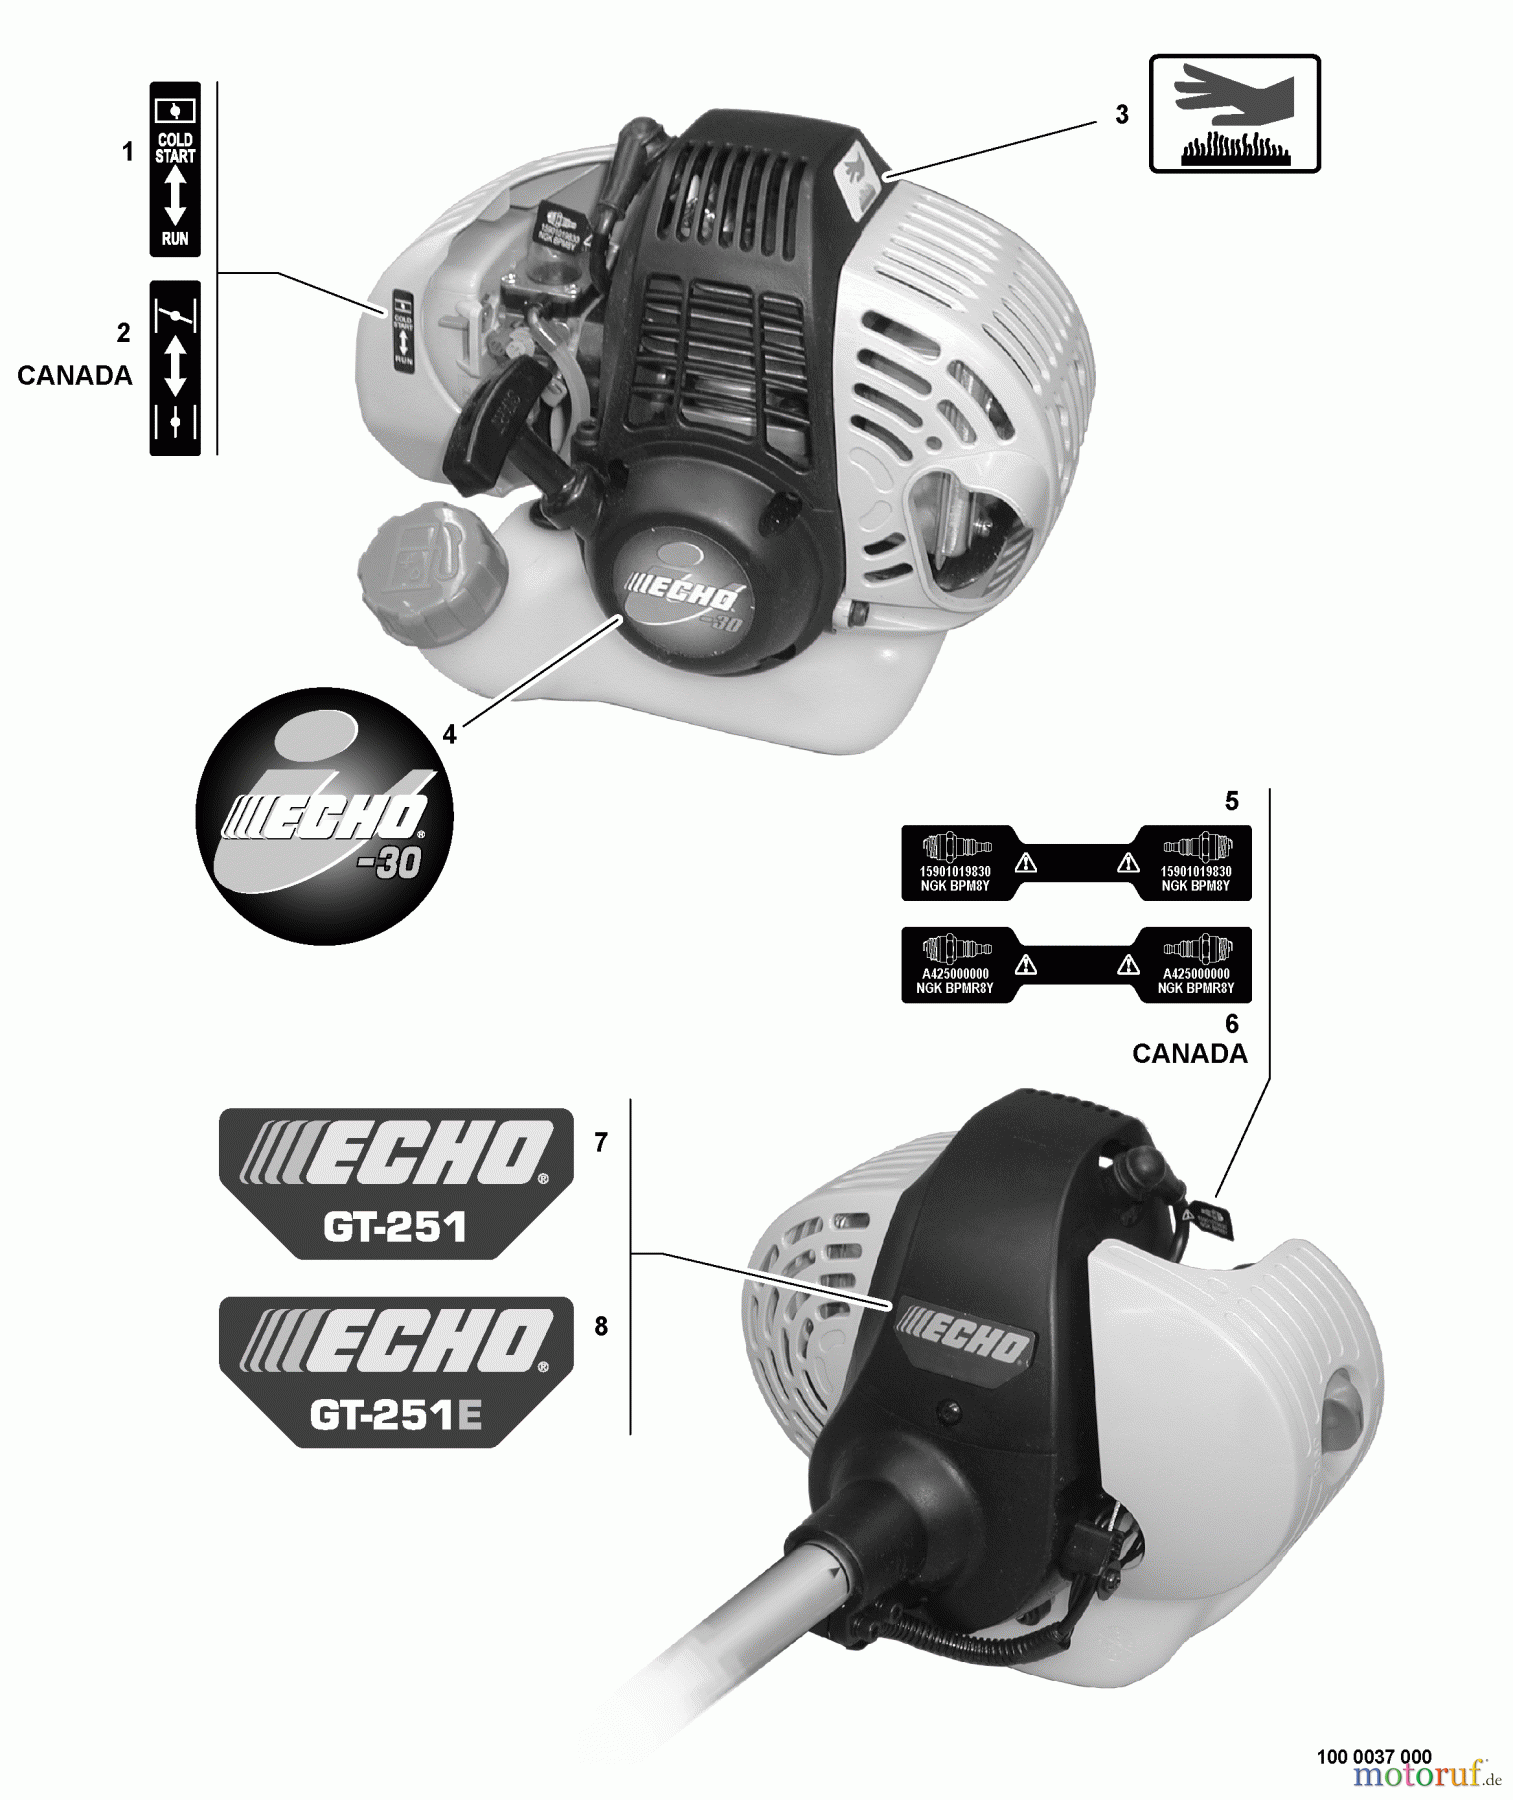  Echo Trimmer, Faden / Bürste GT-251 - Echo String Trimmer, S/N:09001001 - 09999999 Labels